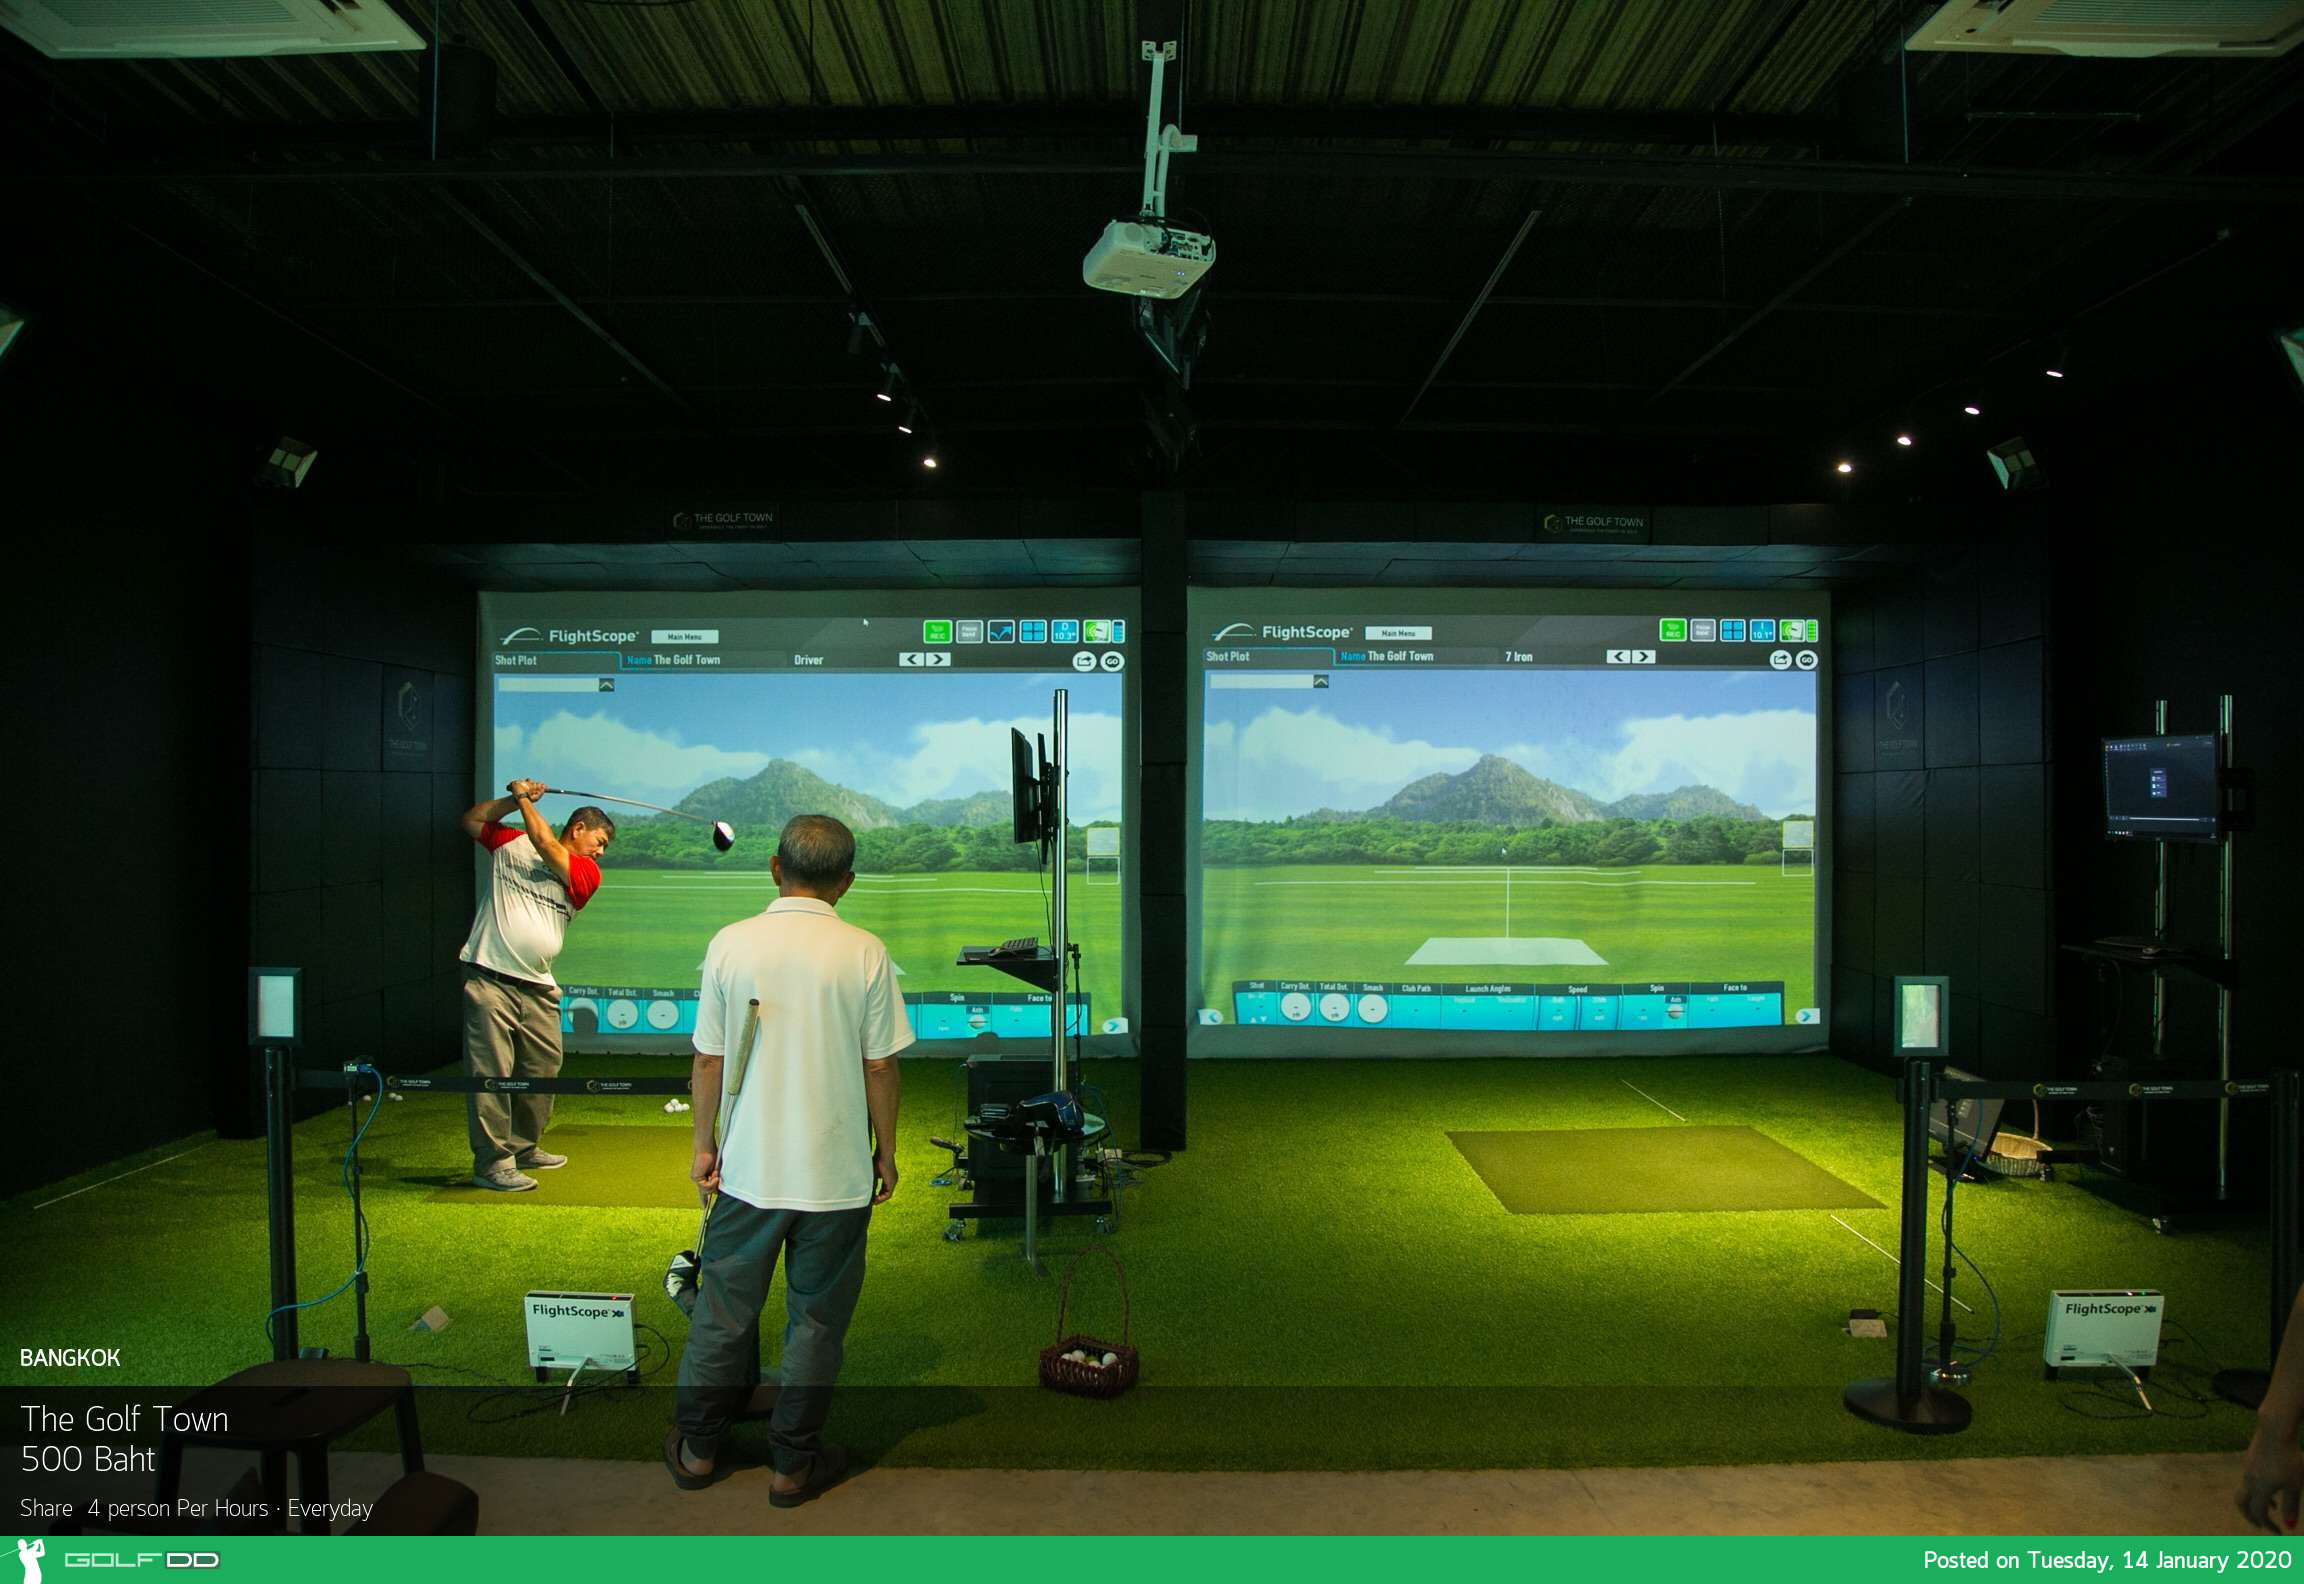 The Golf Town (Golf Simulator) ไม่ต้องเดินตากแดด ไม่ต้องจ่ายค่าแคดดี้และรถกอล์ฟ มิติใหม่ของวงการกอล์ฟที่นักกอล์ฟต้องร้องว้าว…! 